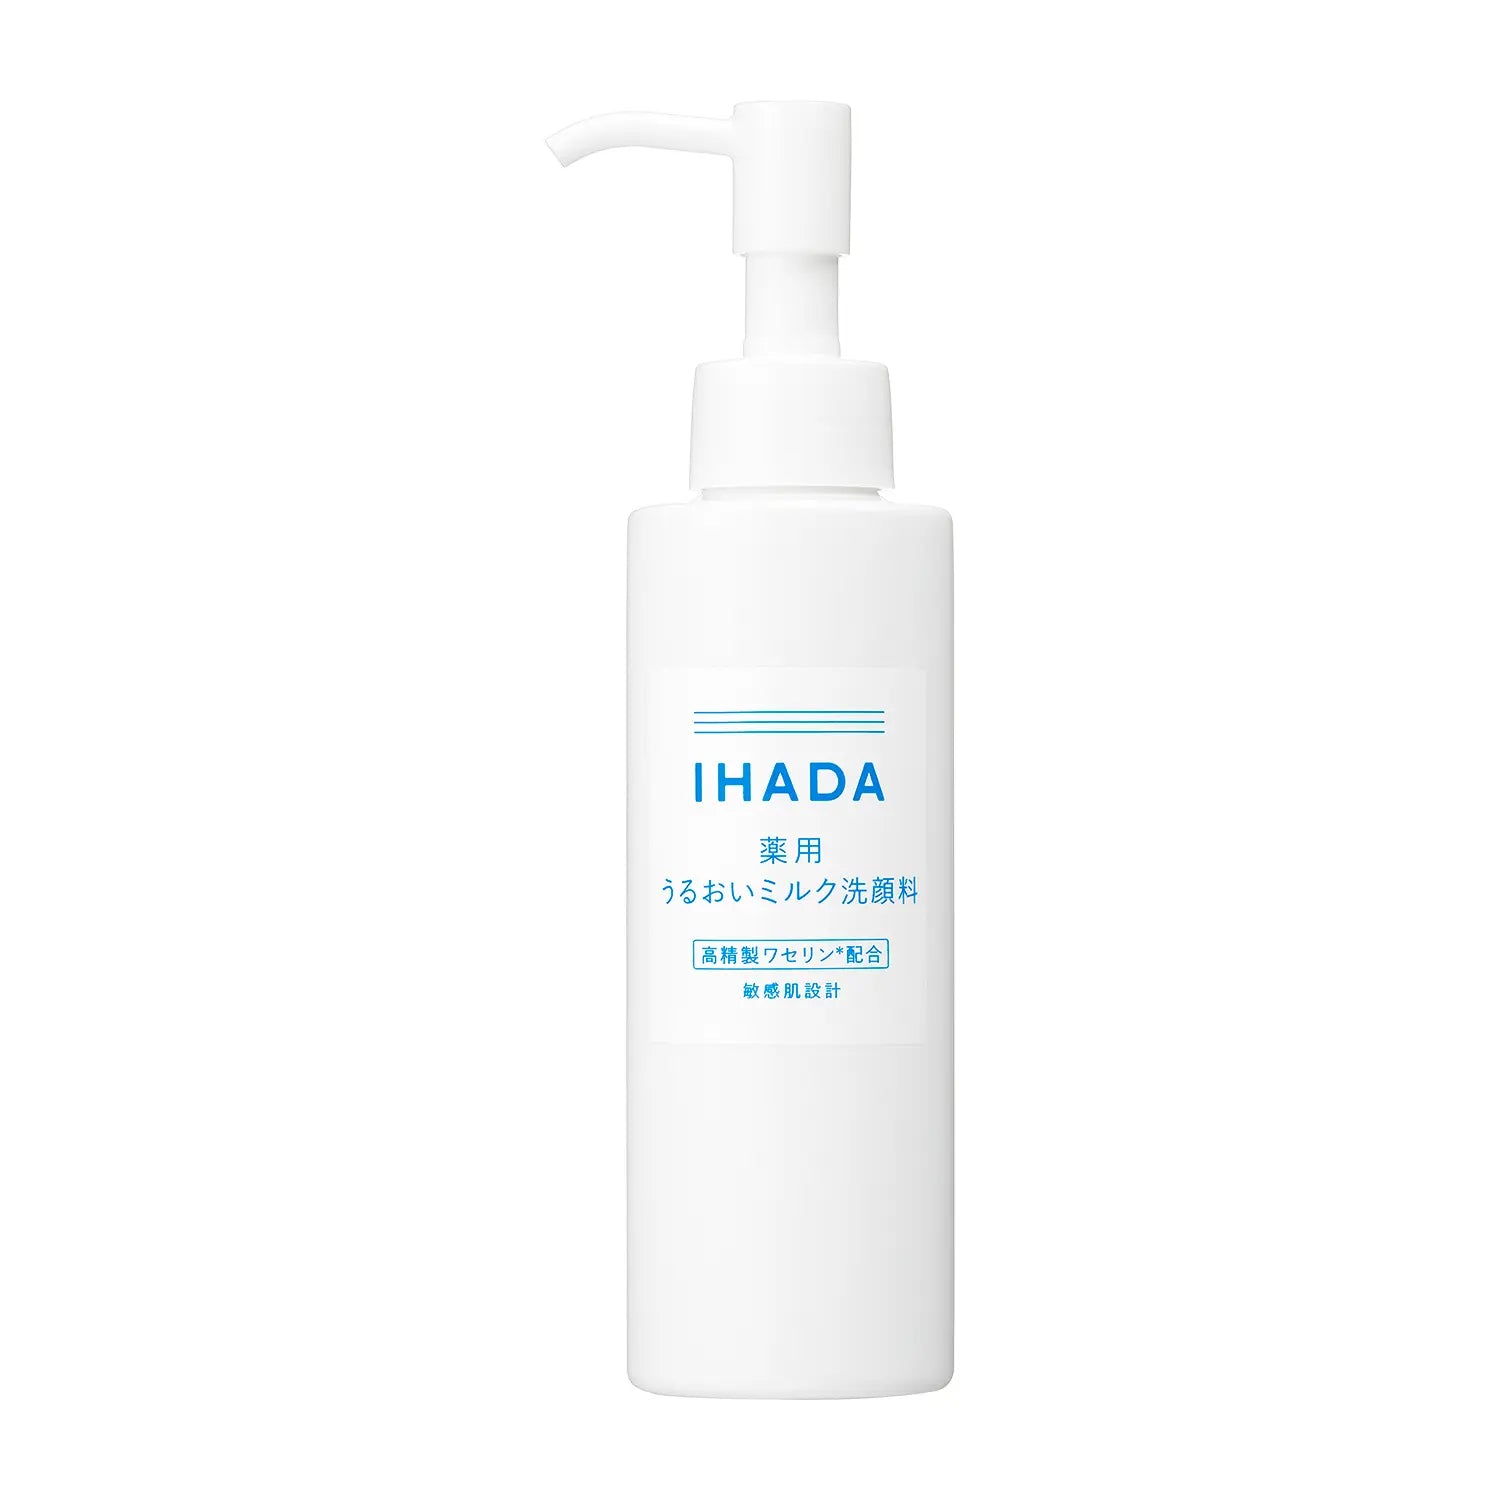 Shiseido Ihada Moisturizing Milk Cleanser for Sensitive Skin 140ml